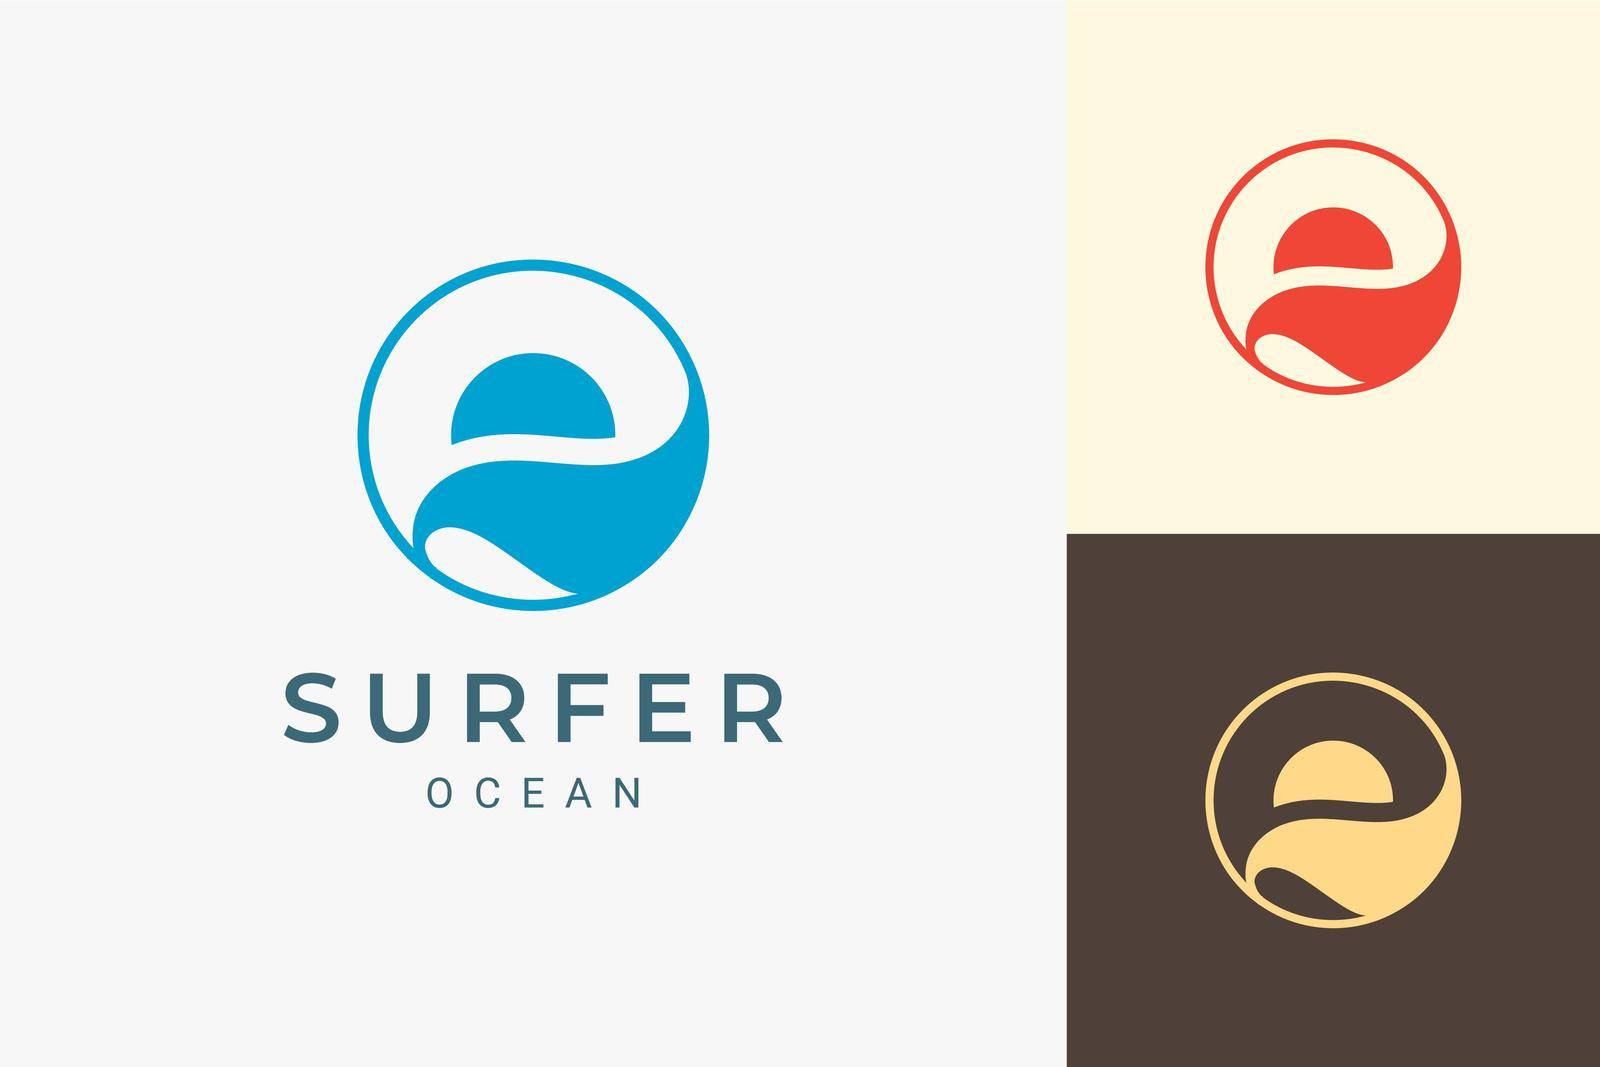 Ocean or beach logo with simple sun and ocean shape